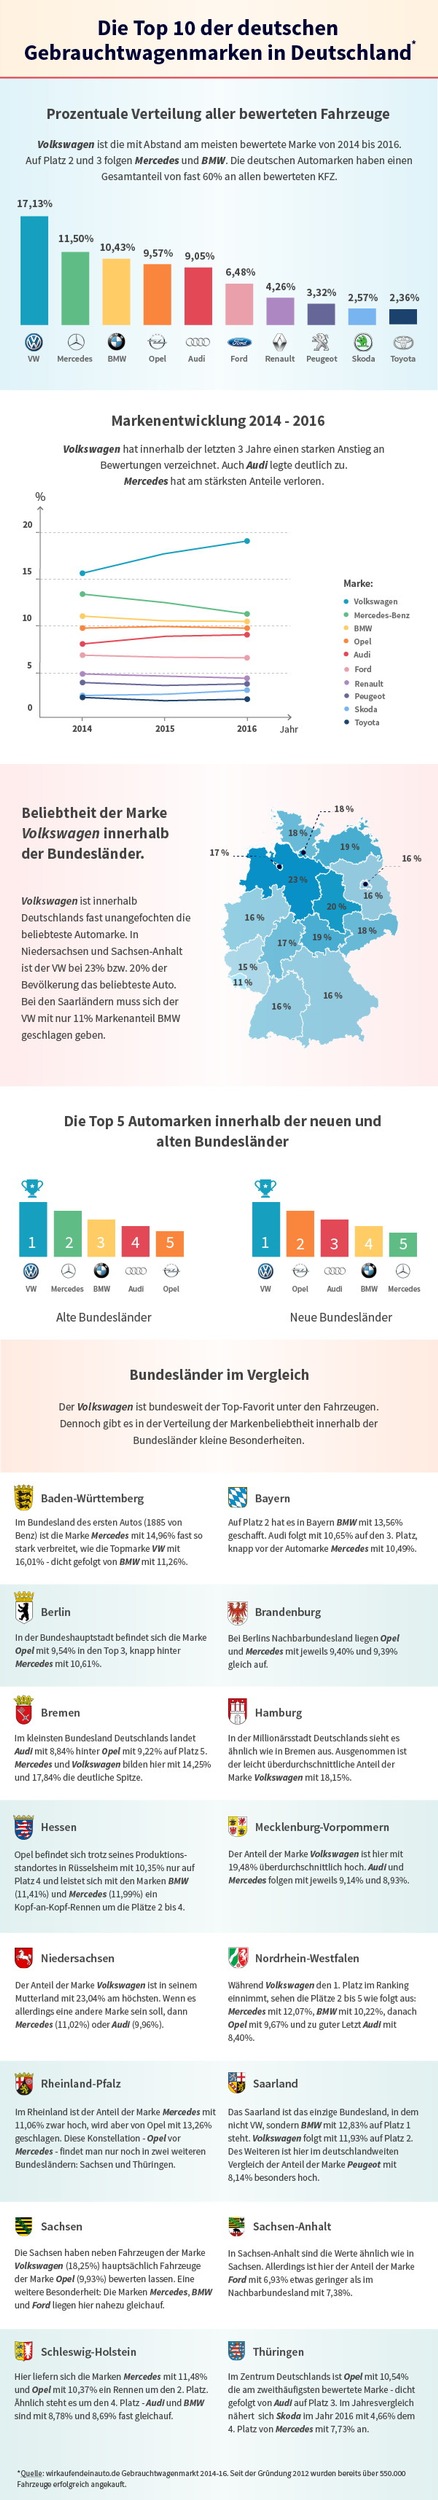 wirkaufendeinauto.de Ranking: Die Top 10 der deutschen Gebrauchtwagenmarken